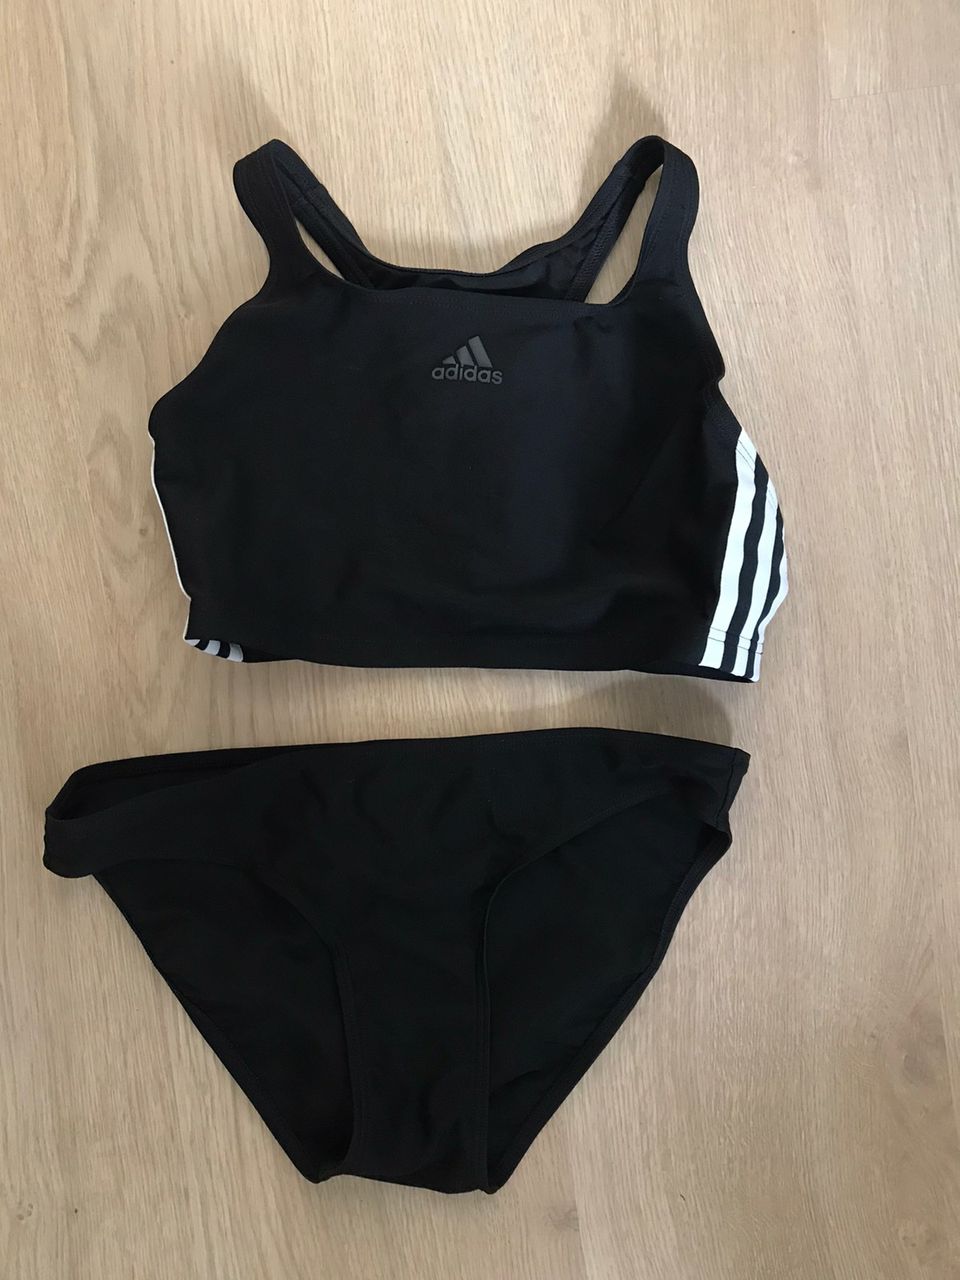 Adidas bikini